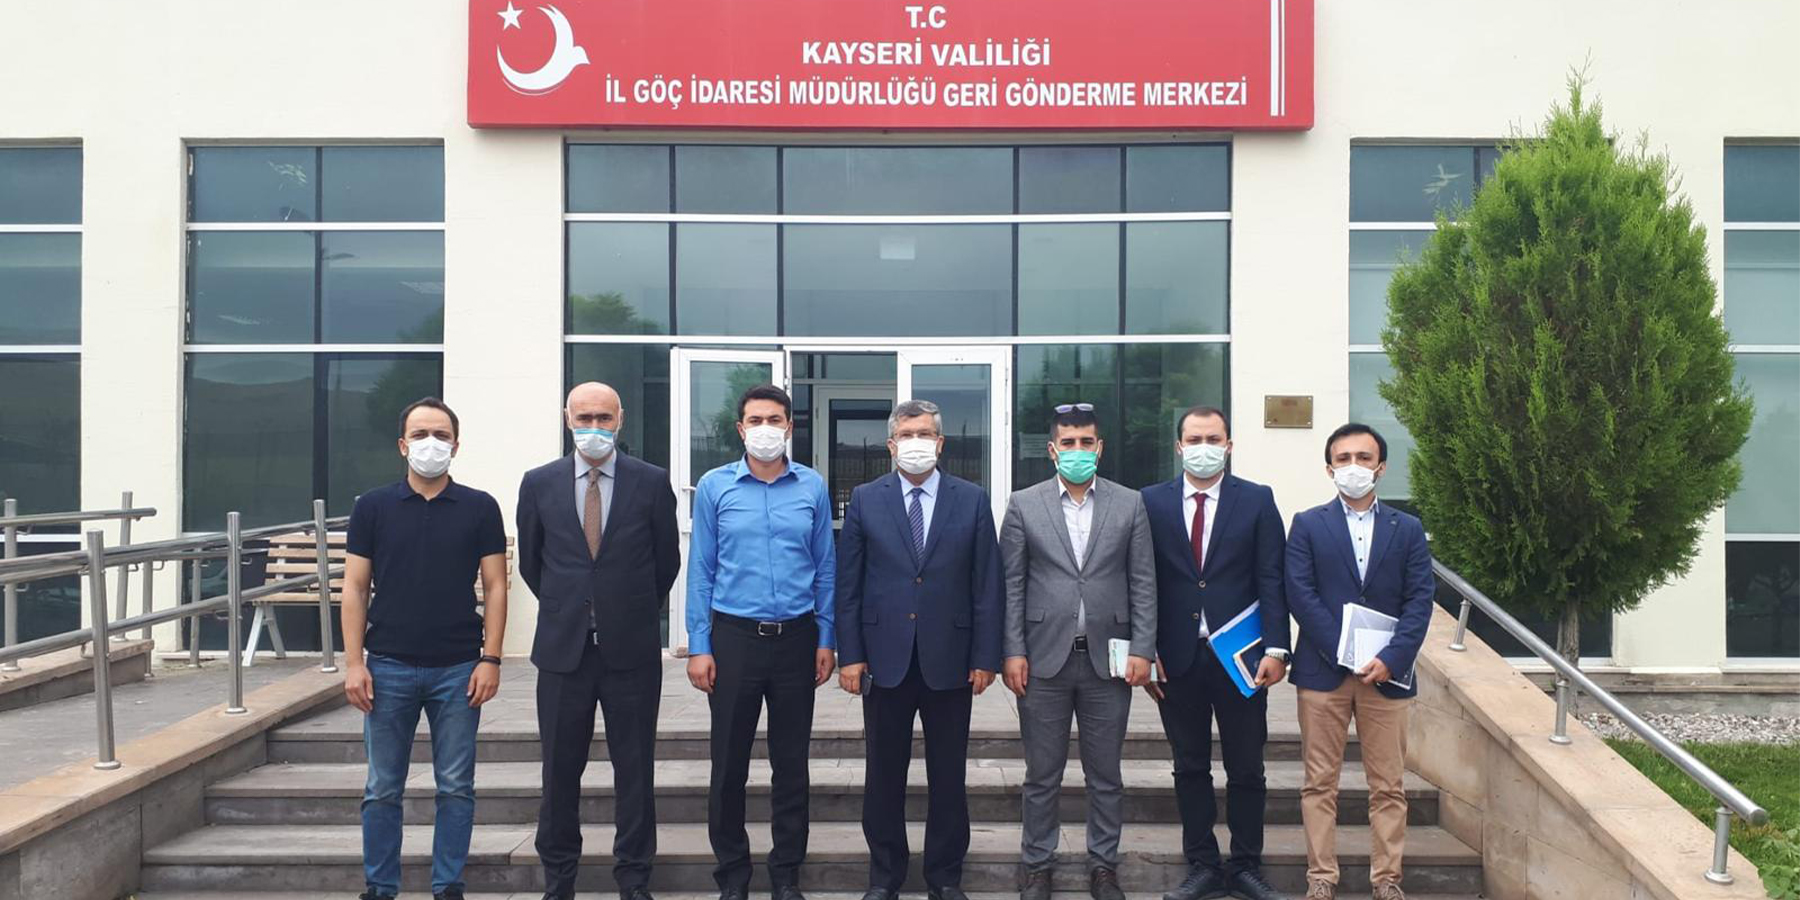 Ulusal Önleme Mekanizması Kapsamında Kayseri’de Takip Ziyaretleri Gerçekleştirildi